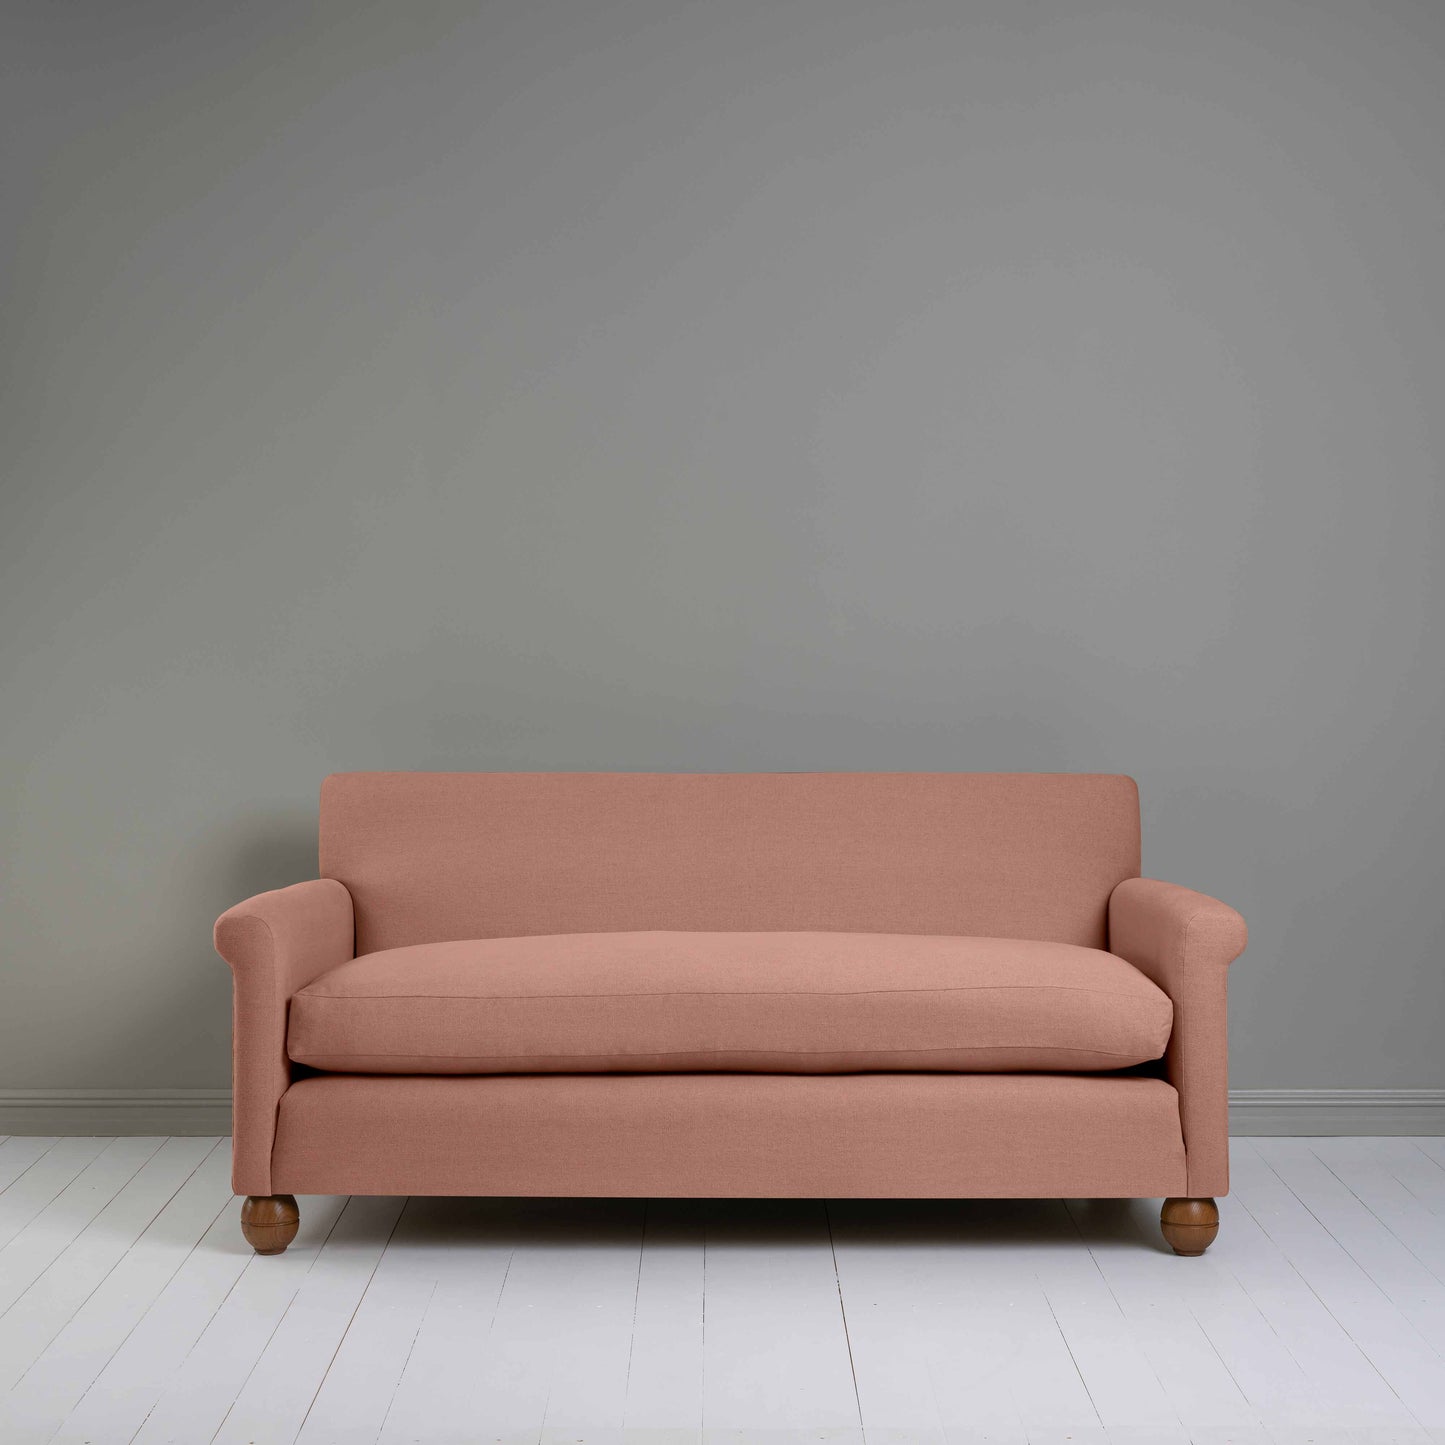 Idler 3 Seater Sofa in Laidback Linen Roseberry